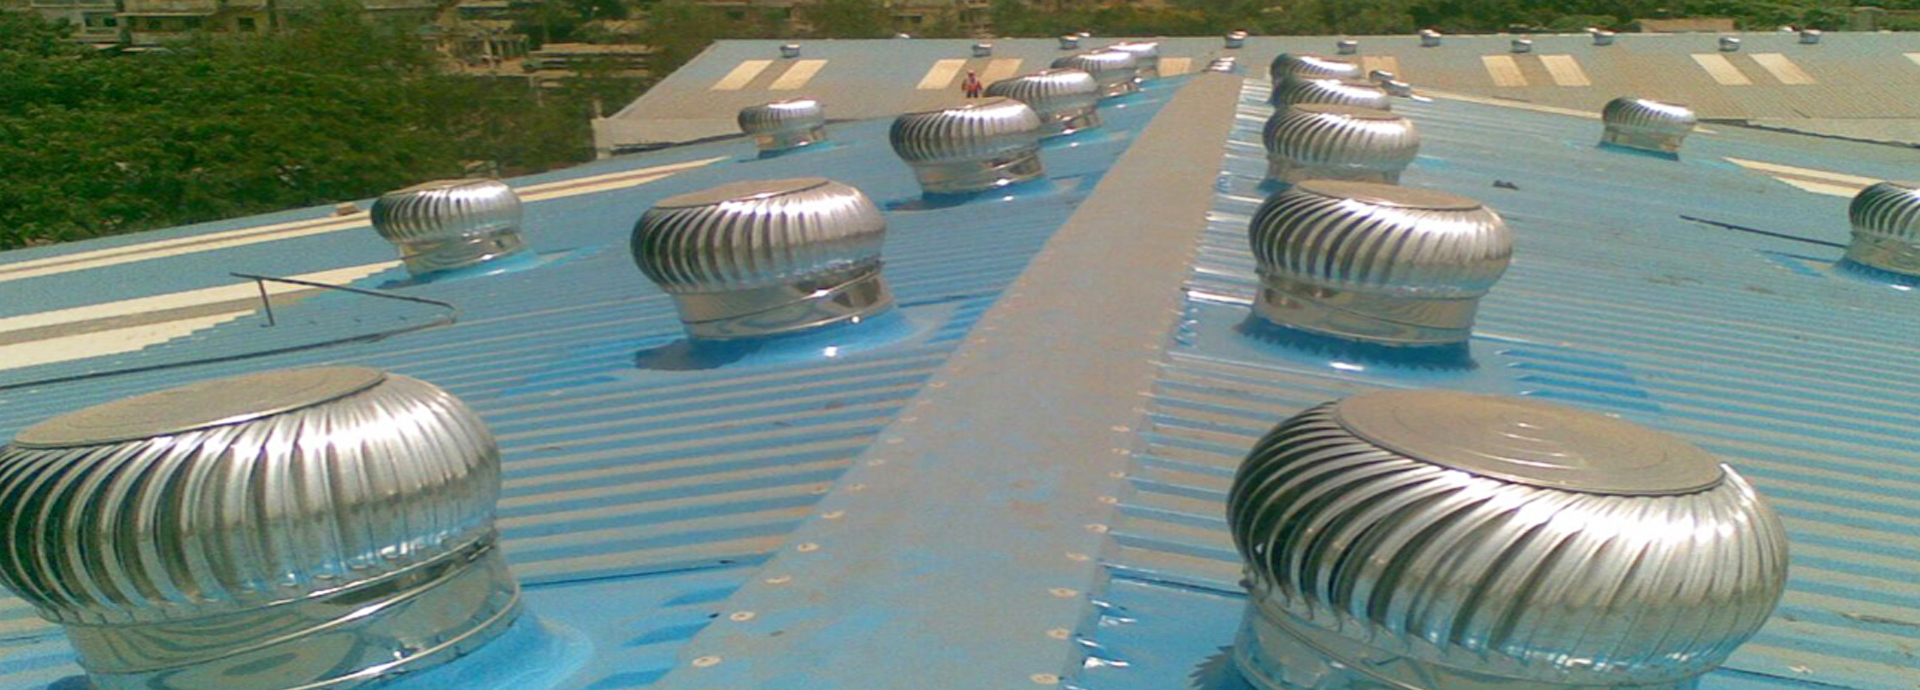 Turbo Ventilators, Air Ventilation, Roof Ventilators, Roof